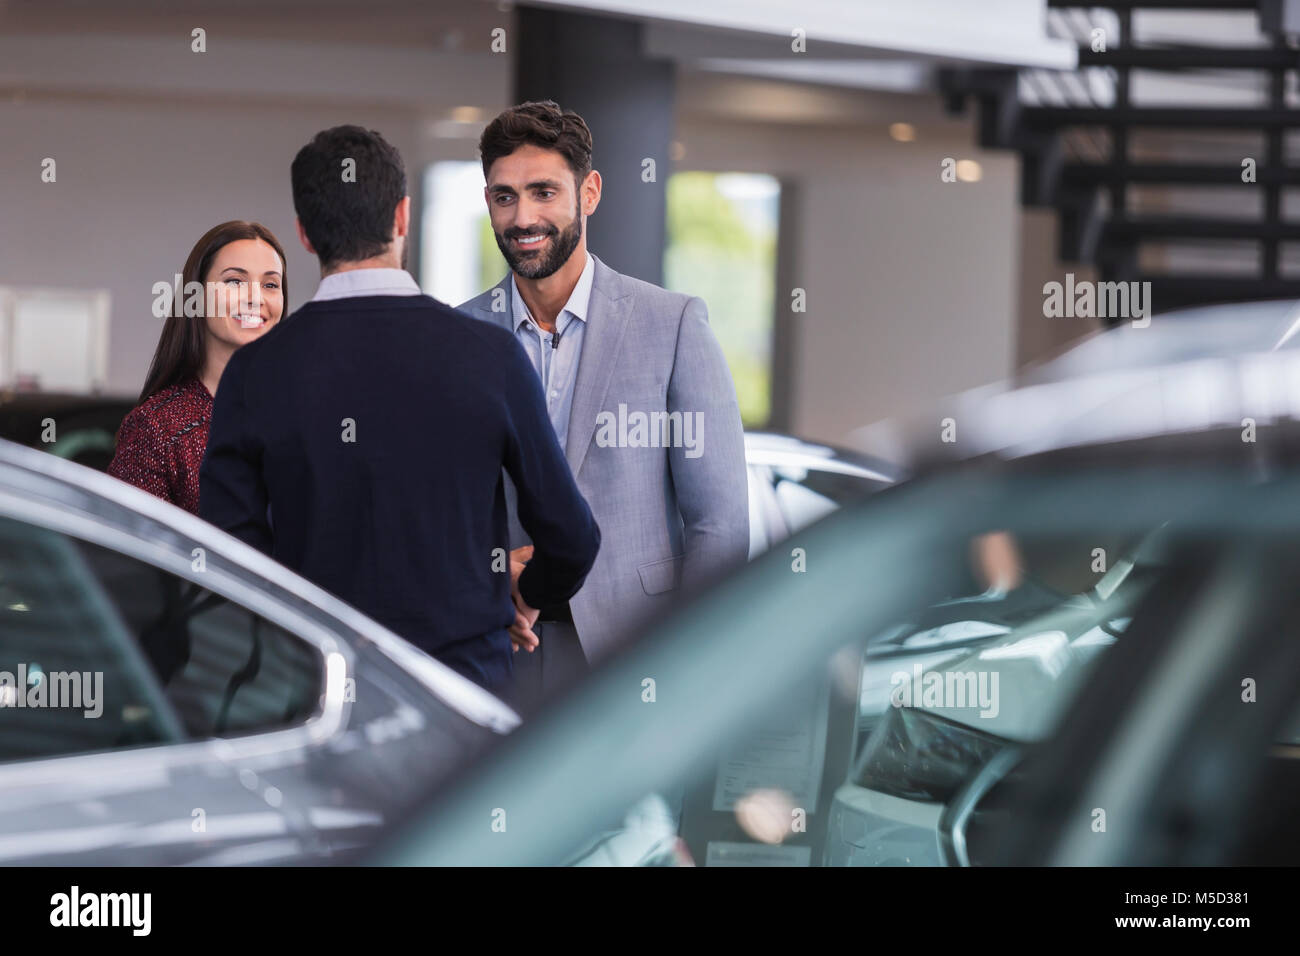 Autoverkäufer Gruß, Hände schütteln mit ein paar Kunden in Auto Dealership showroom Stockfoto